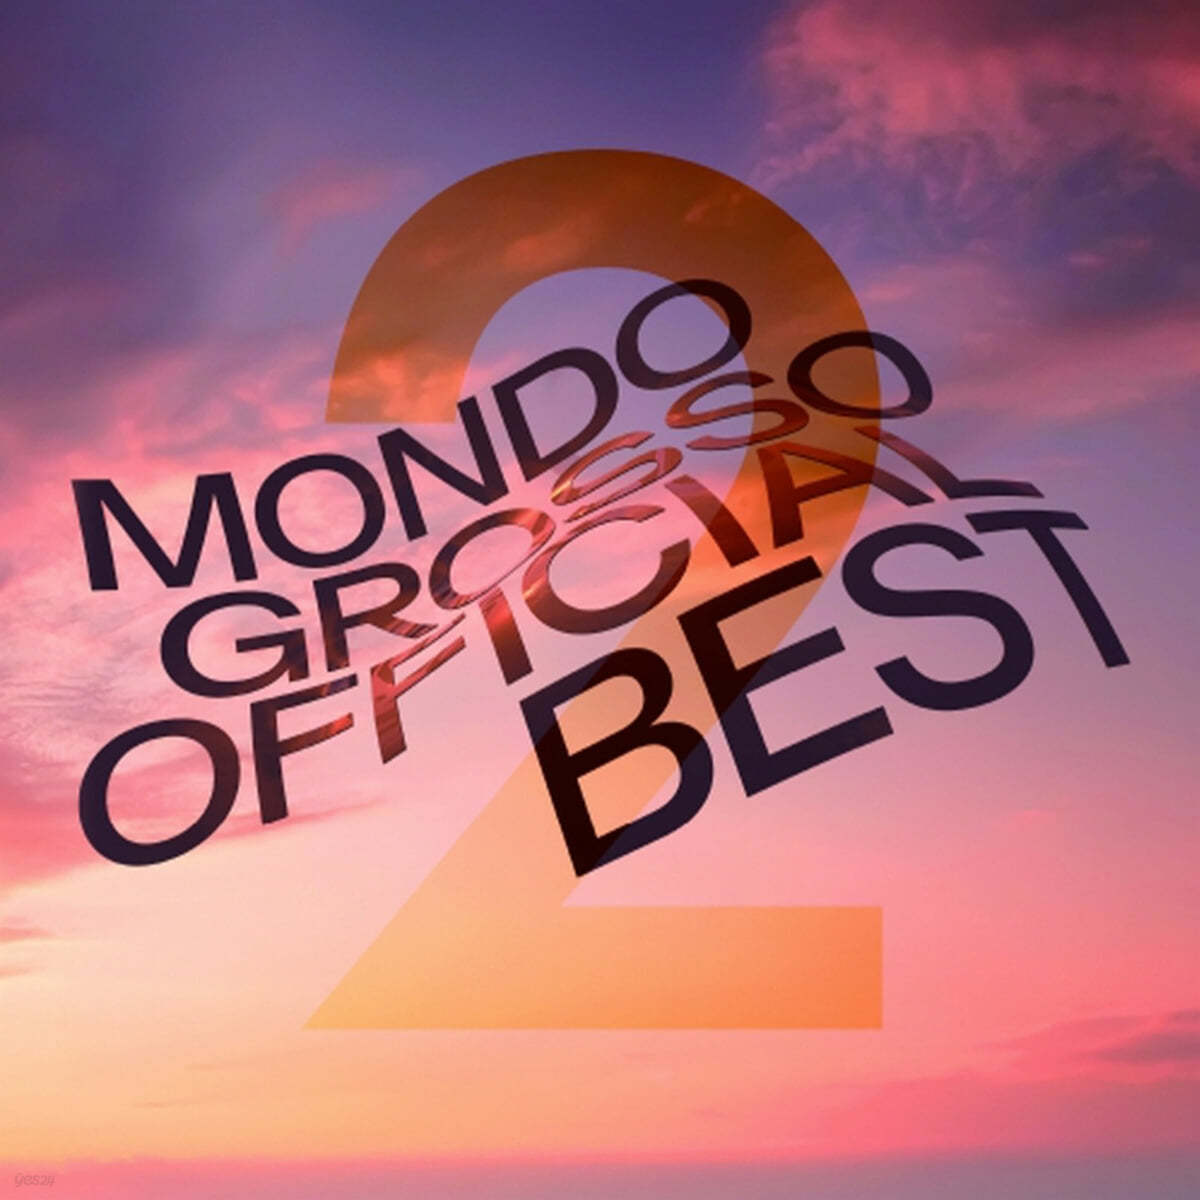 몬도 그로소 오피셜 베스트 2집 (Mondo Grosso Official Best 2) [2LP] 